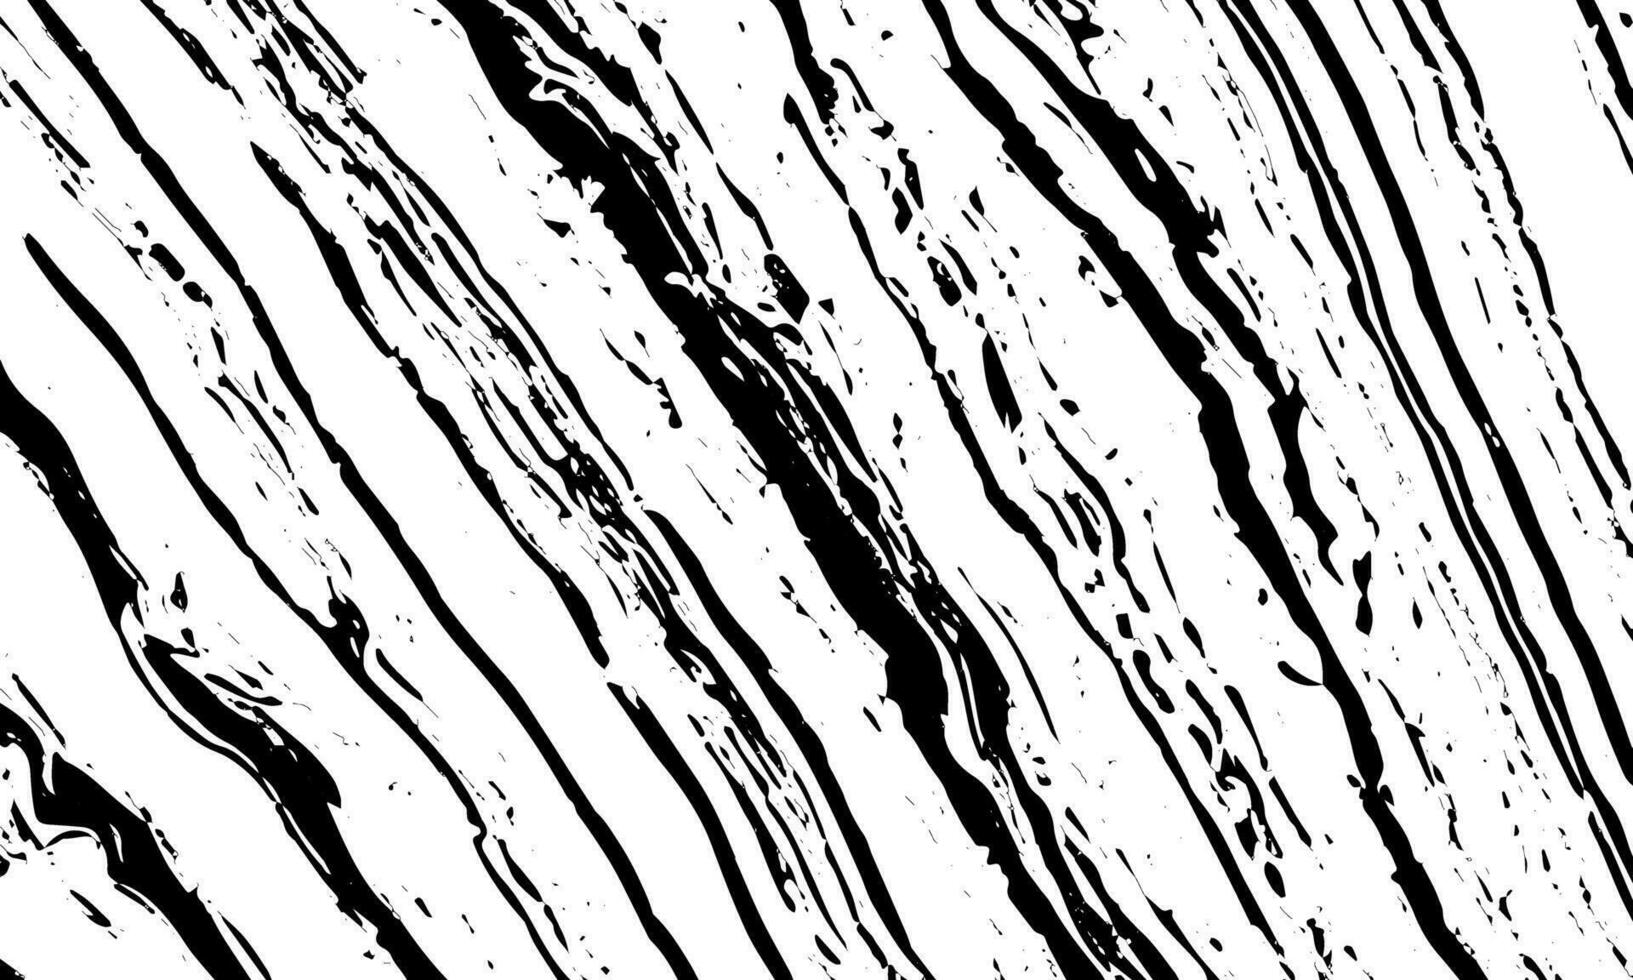 zwart en wit vector illustratie van een hout graan structuur